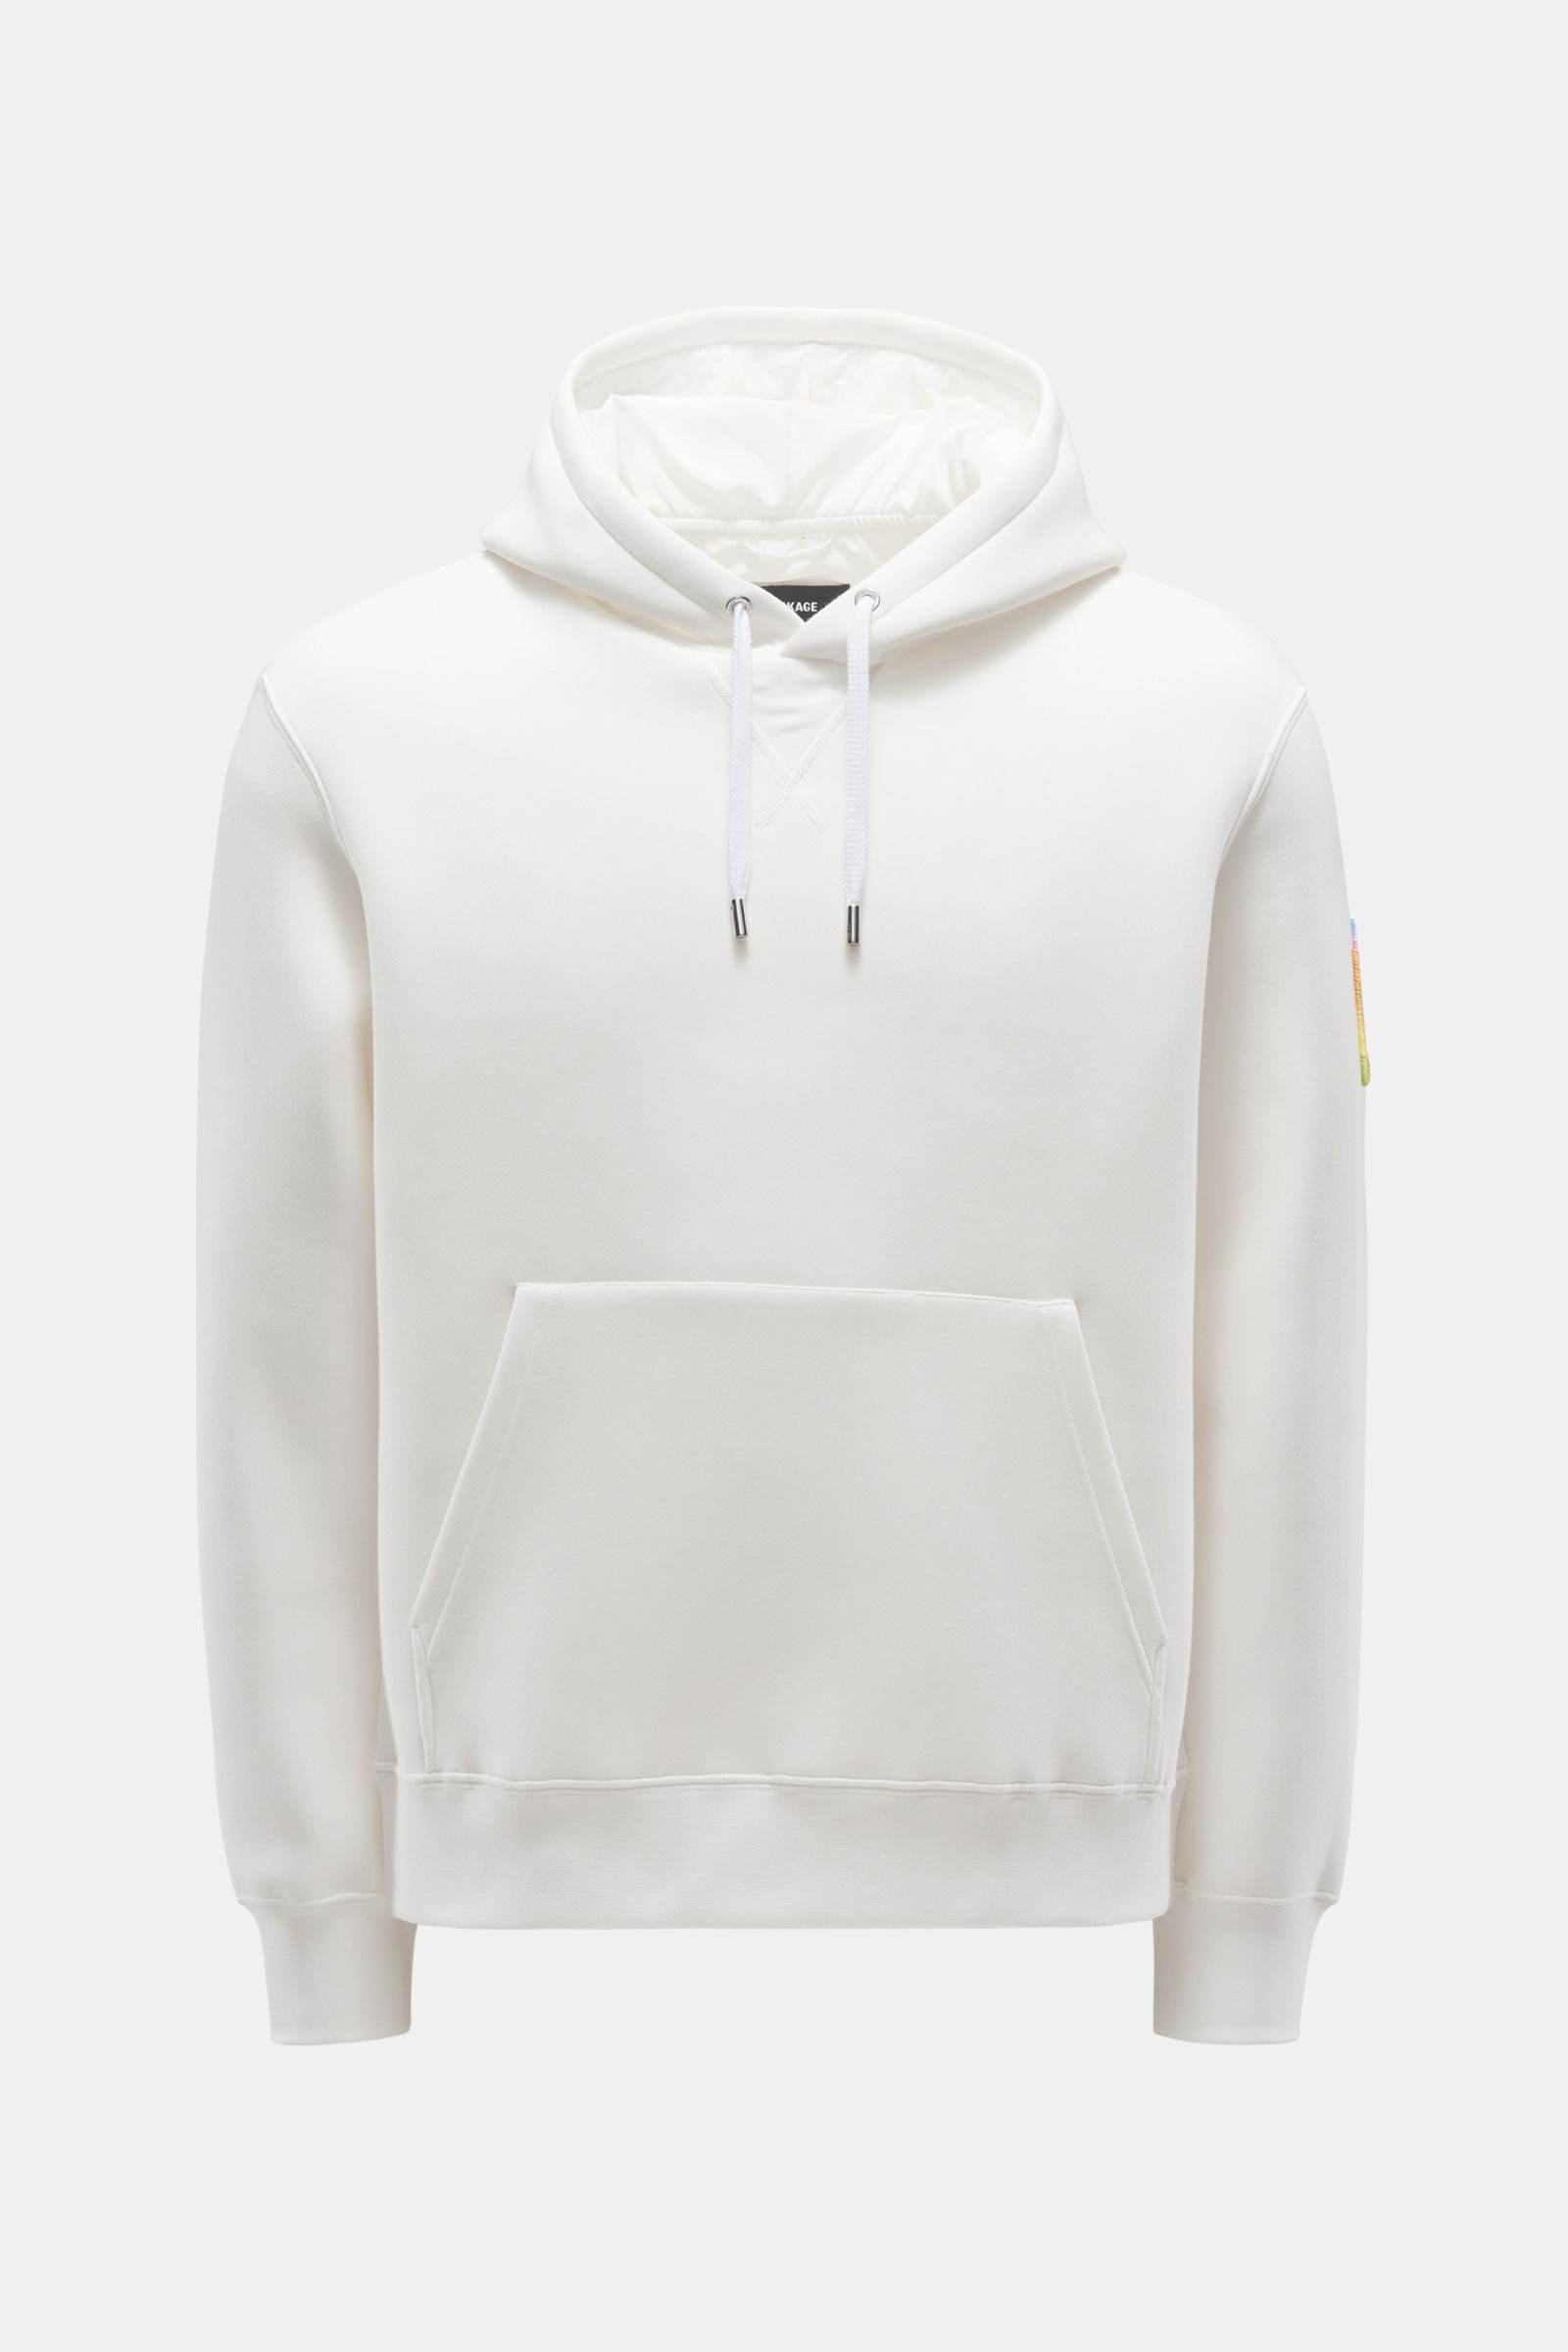 Neoprene hooded jumper 'Krys' white